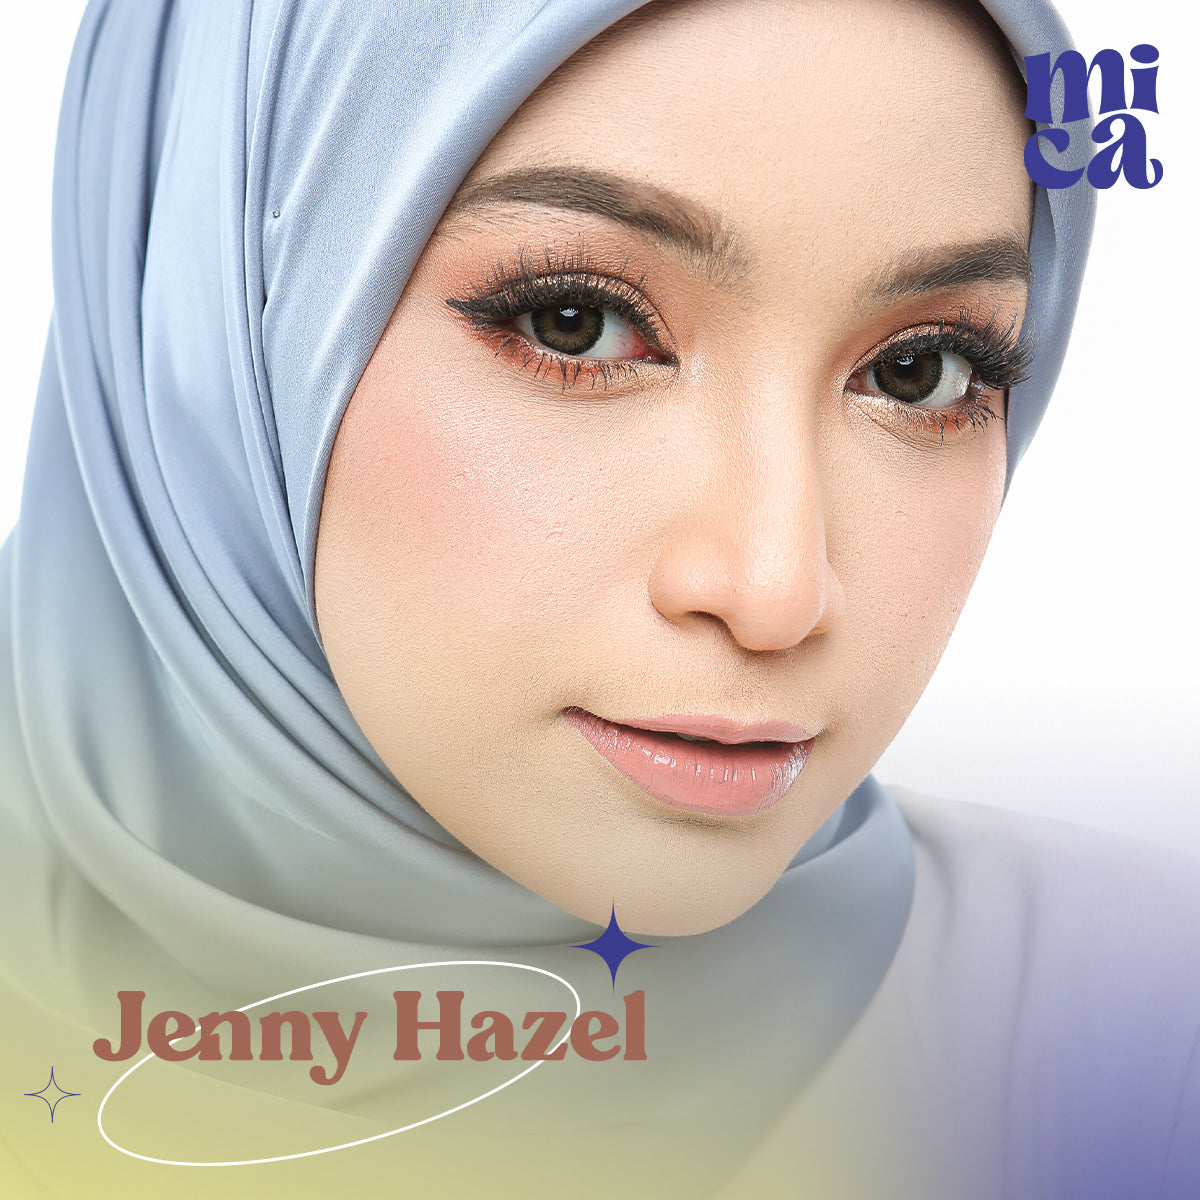 Jenny Hazel 0-800